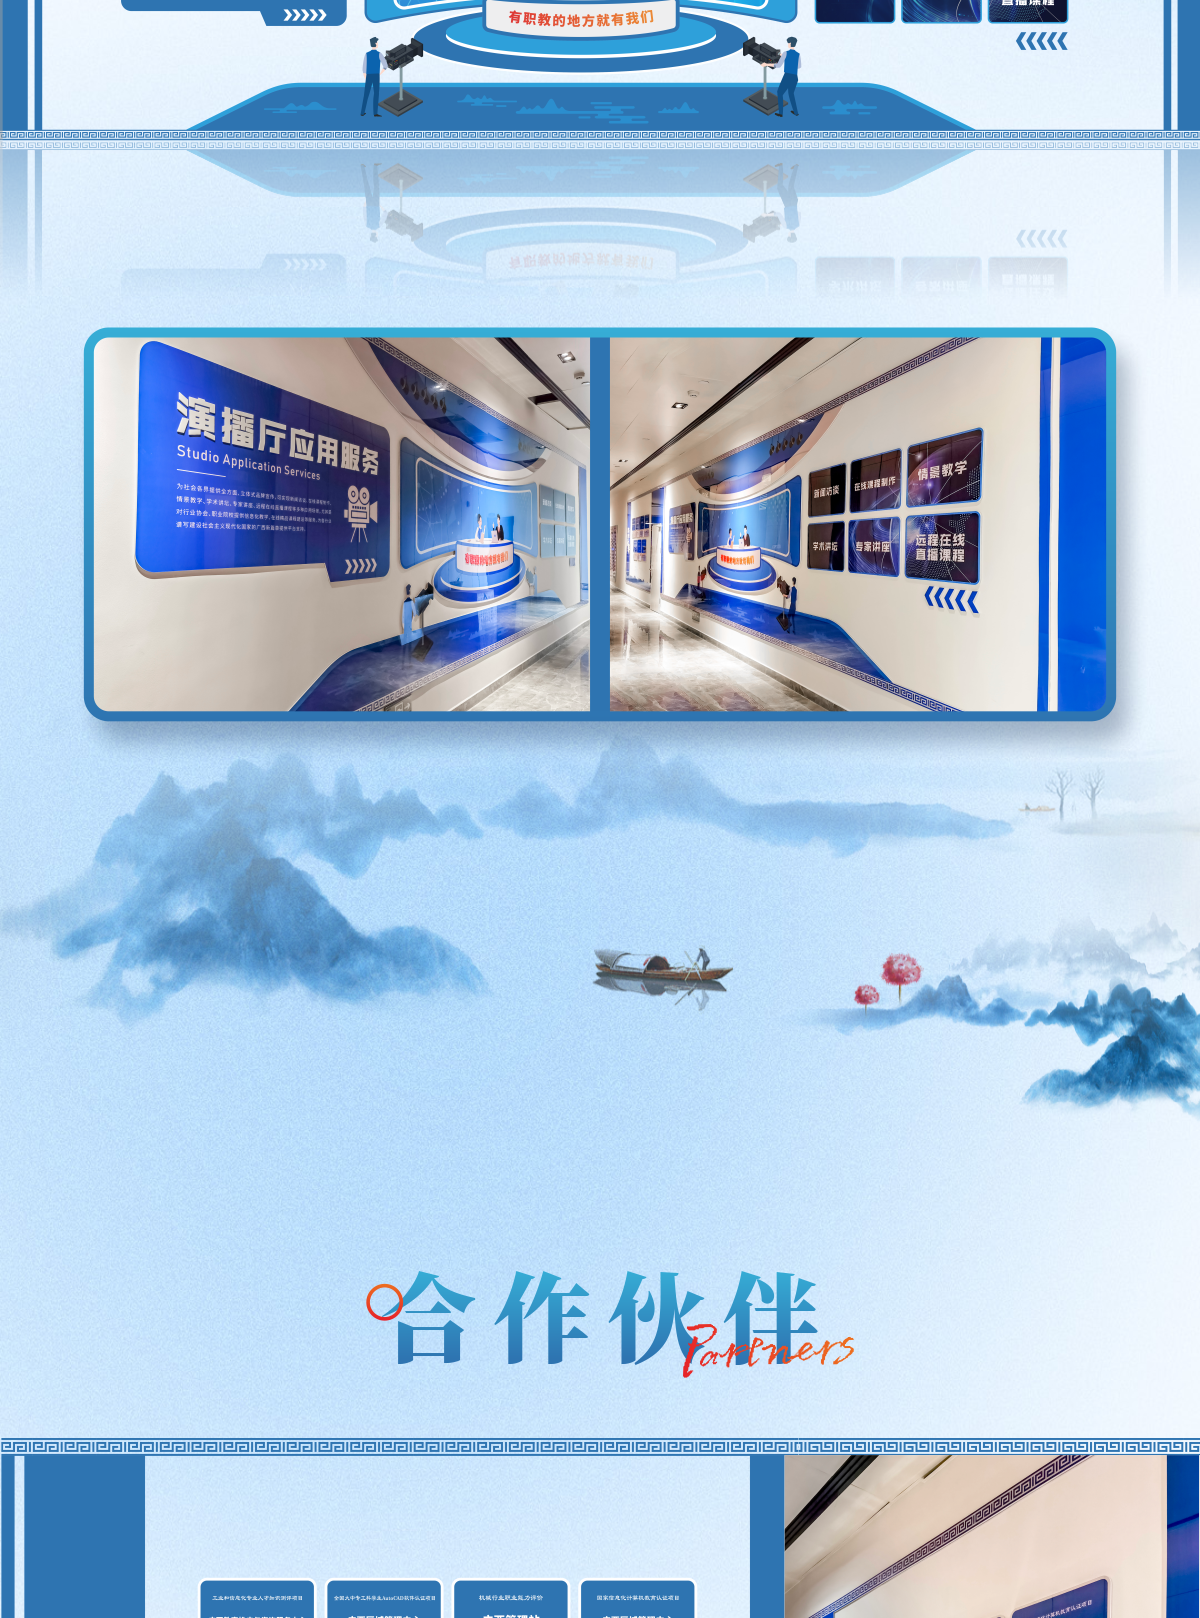 八桂职教网文化走廊企业文化墙设计制作1_02.png